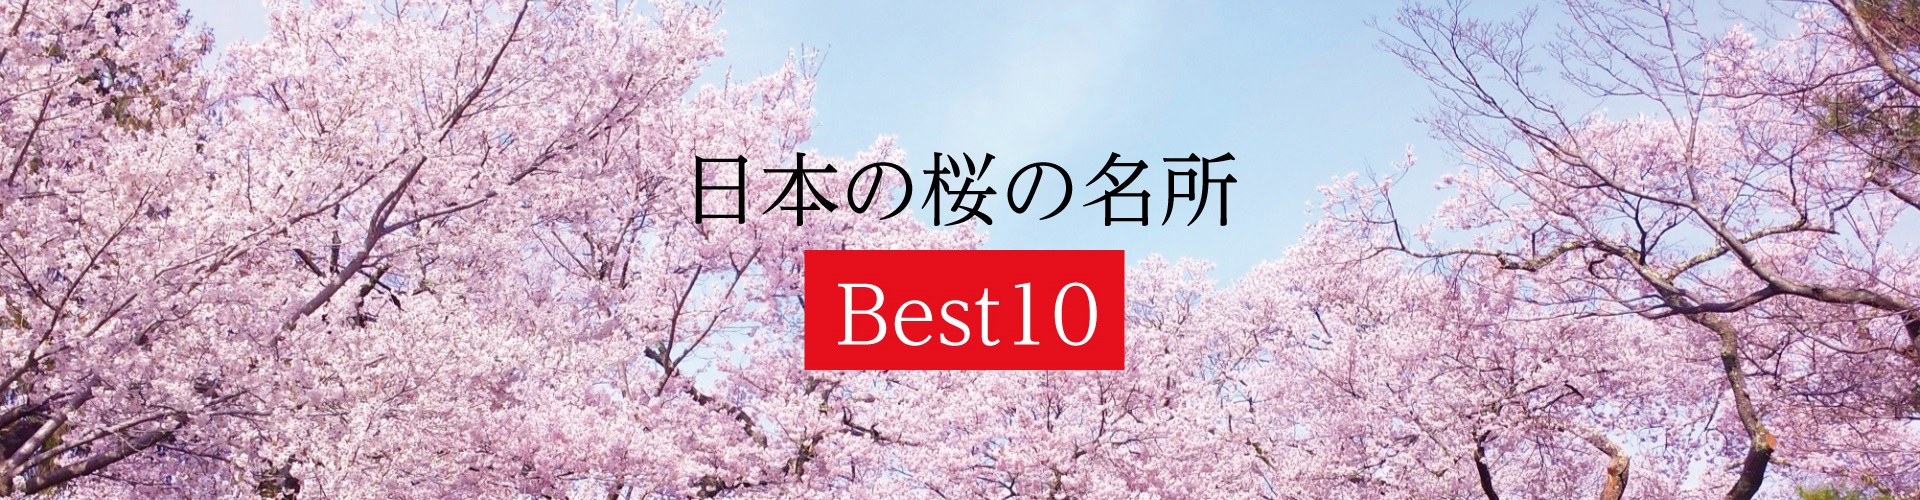 日本の桜の名所 Best10